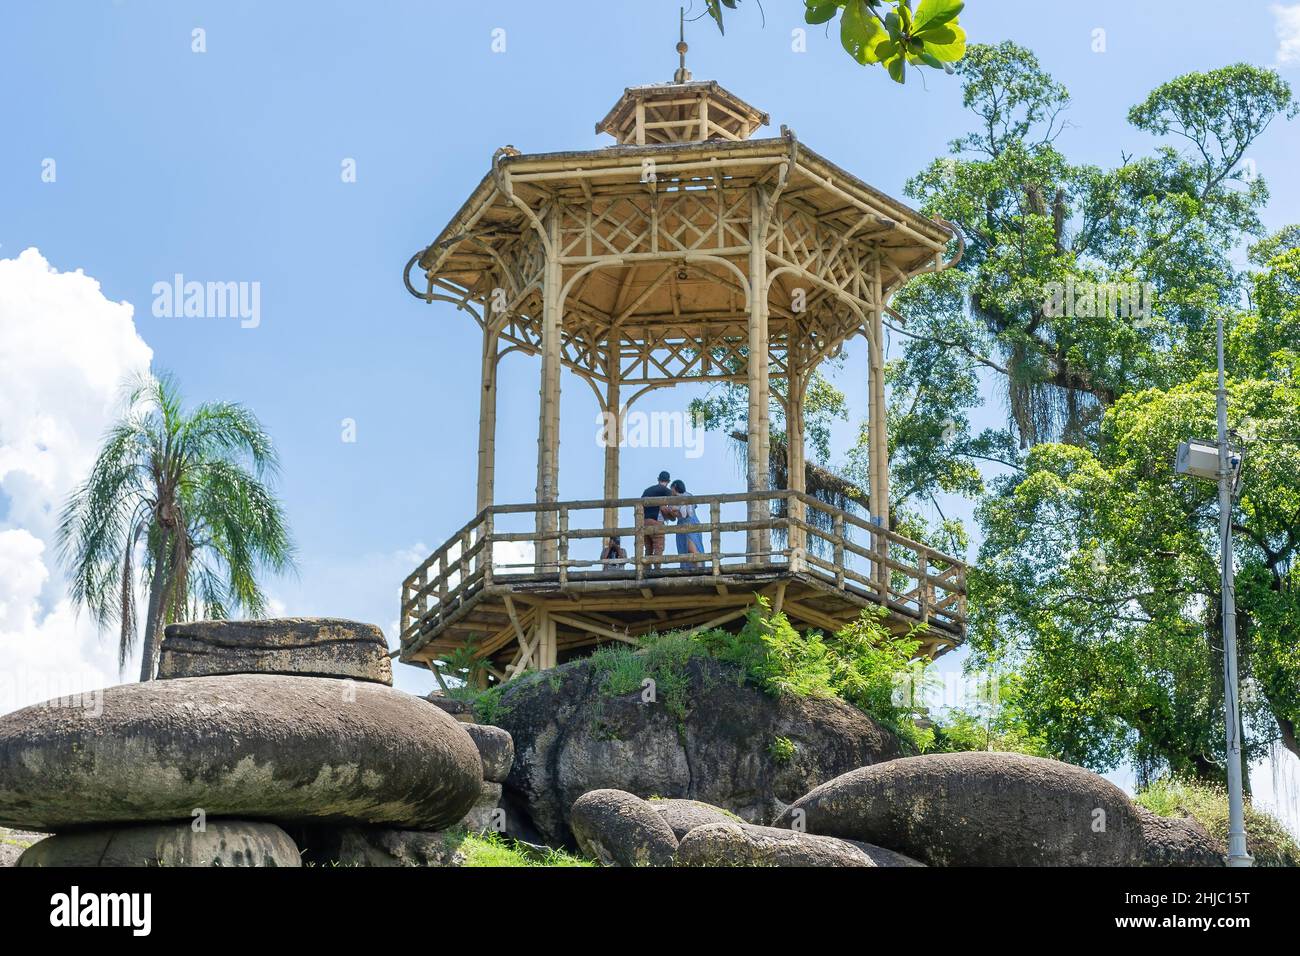 Ein alter Pavillon in Quinta da Boa Vista, einem öffentlichen Park von großer historischer Bedeutung, der sich im Viertel Sao Cristovao befindet. Stockfoto